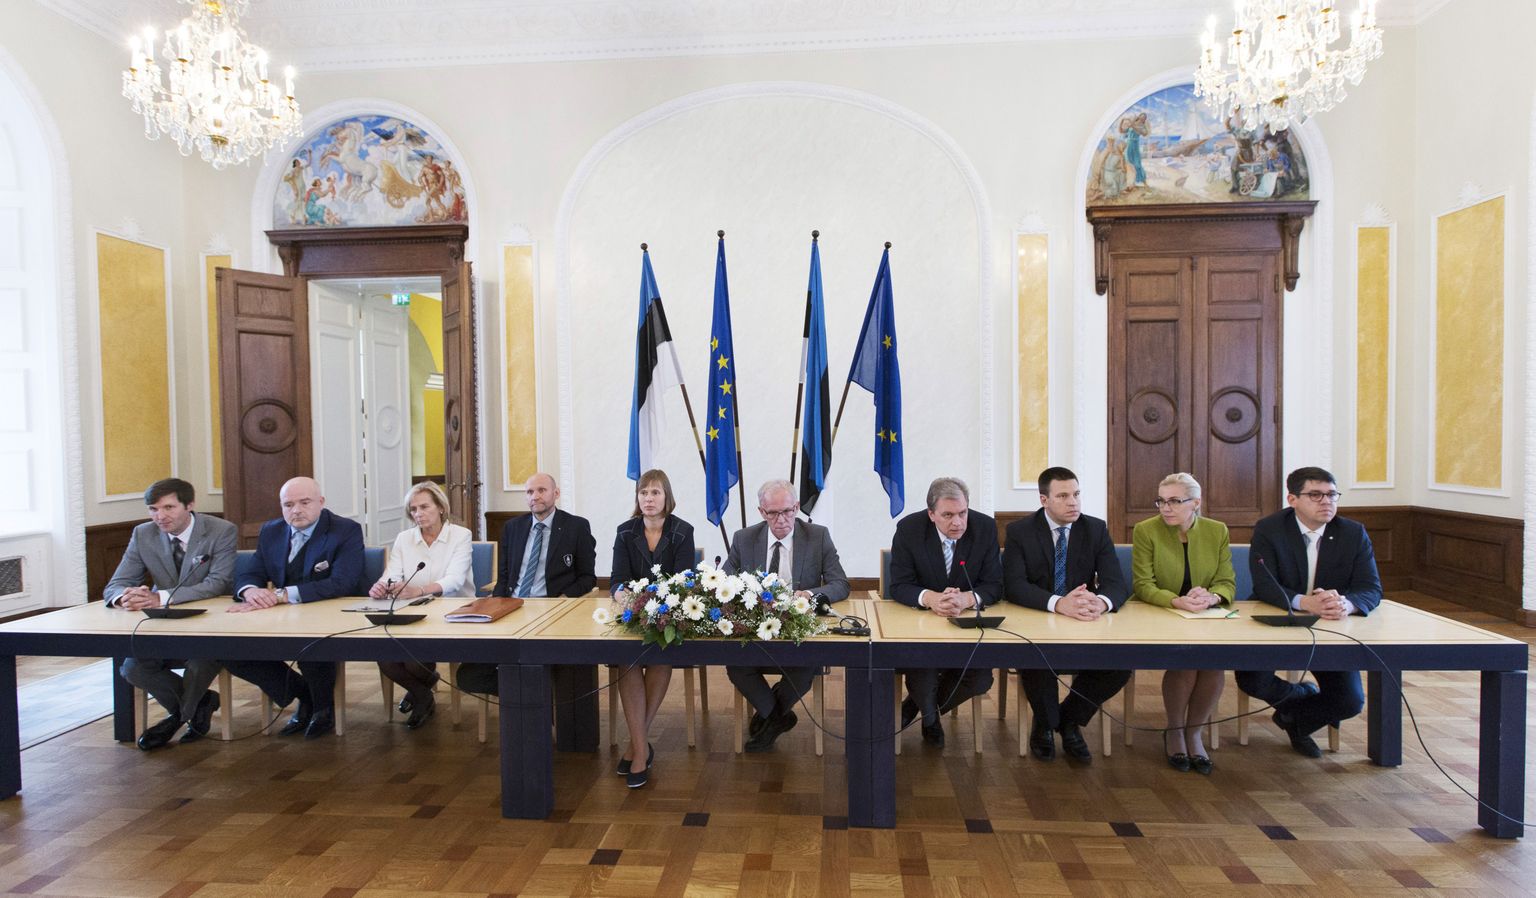 Meenutus kurva näoga riigikogu fraktsioonijuhtide ja Kersti Kaljulaidi kohtumisest mullu 28. septembril, kui valimiskogus oli riigipeavalimised nurjunud. Kaljulaid valiti presidendiks riigikogus 3. oktoobril.